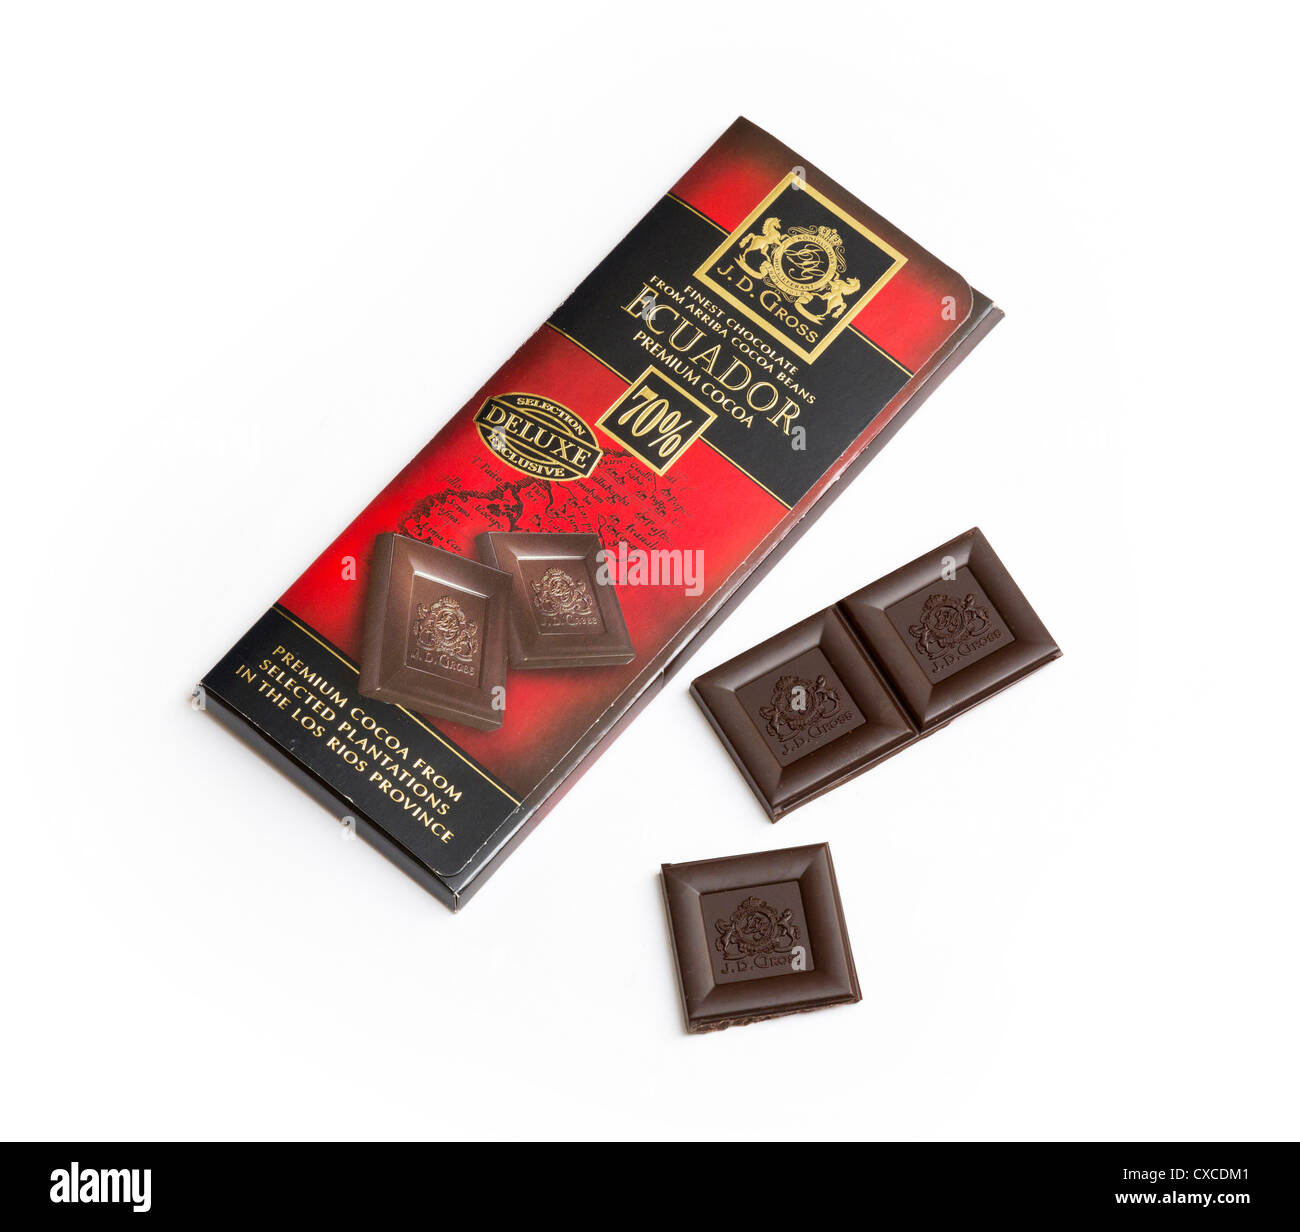 dark chocolate made by J D Gross / Rausch Schokolade Stock Photo